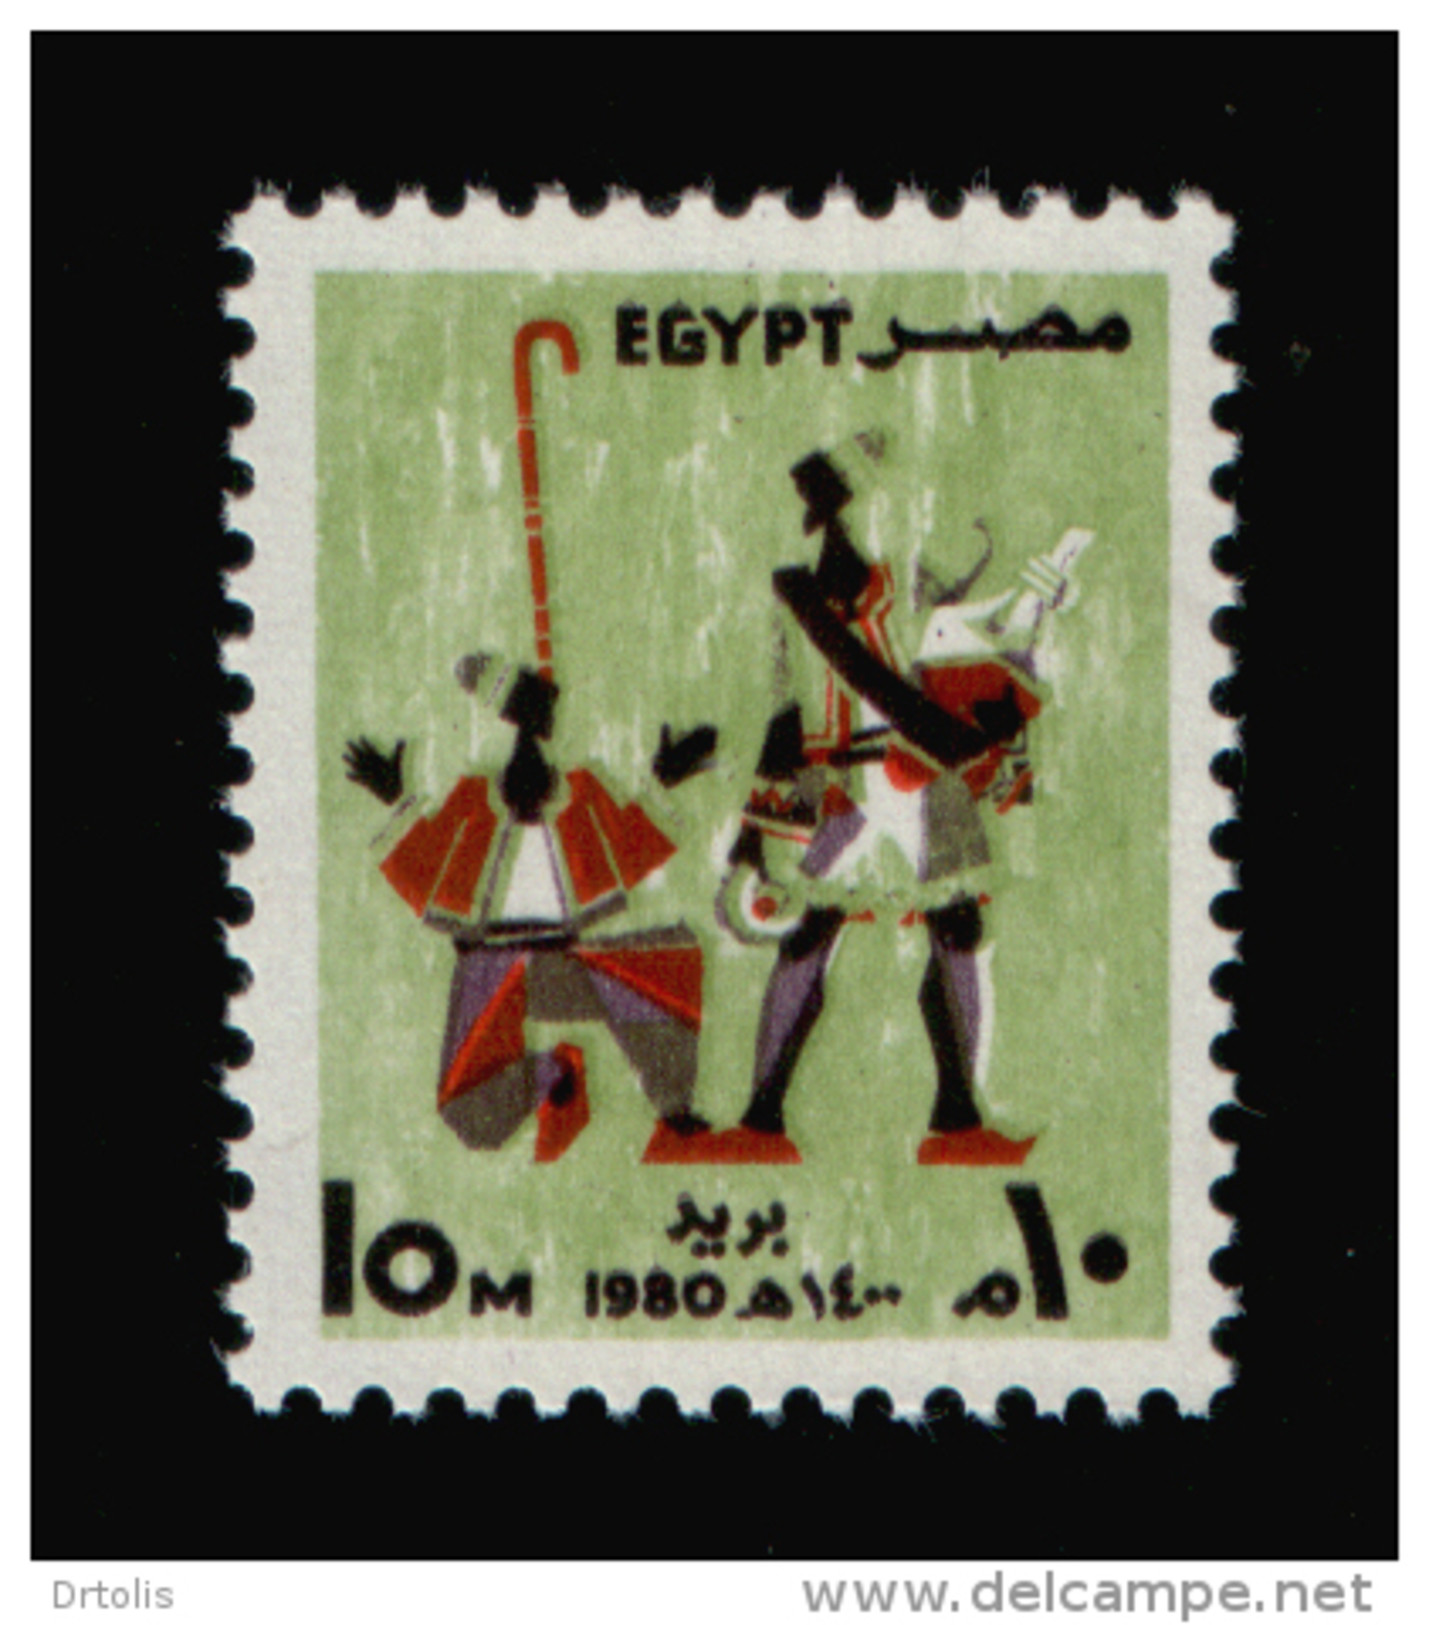 EGYPT / 1980 / FESTIVALS / ERKSOUS ( LICORICE ) SELLER / NAKRAZAN PLAYER / MNH / VF - Unused Stamps